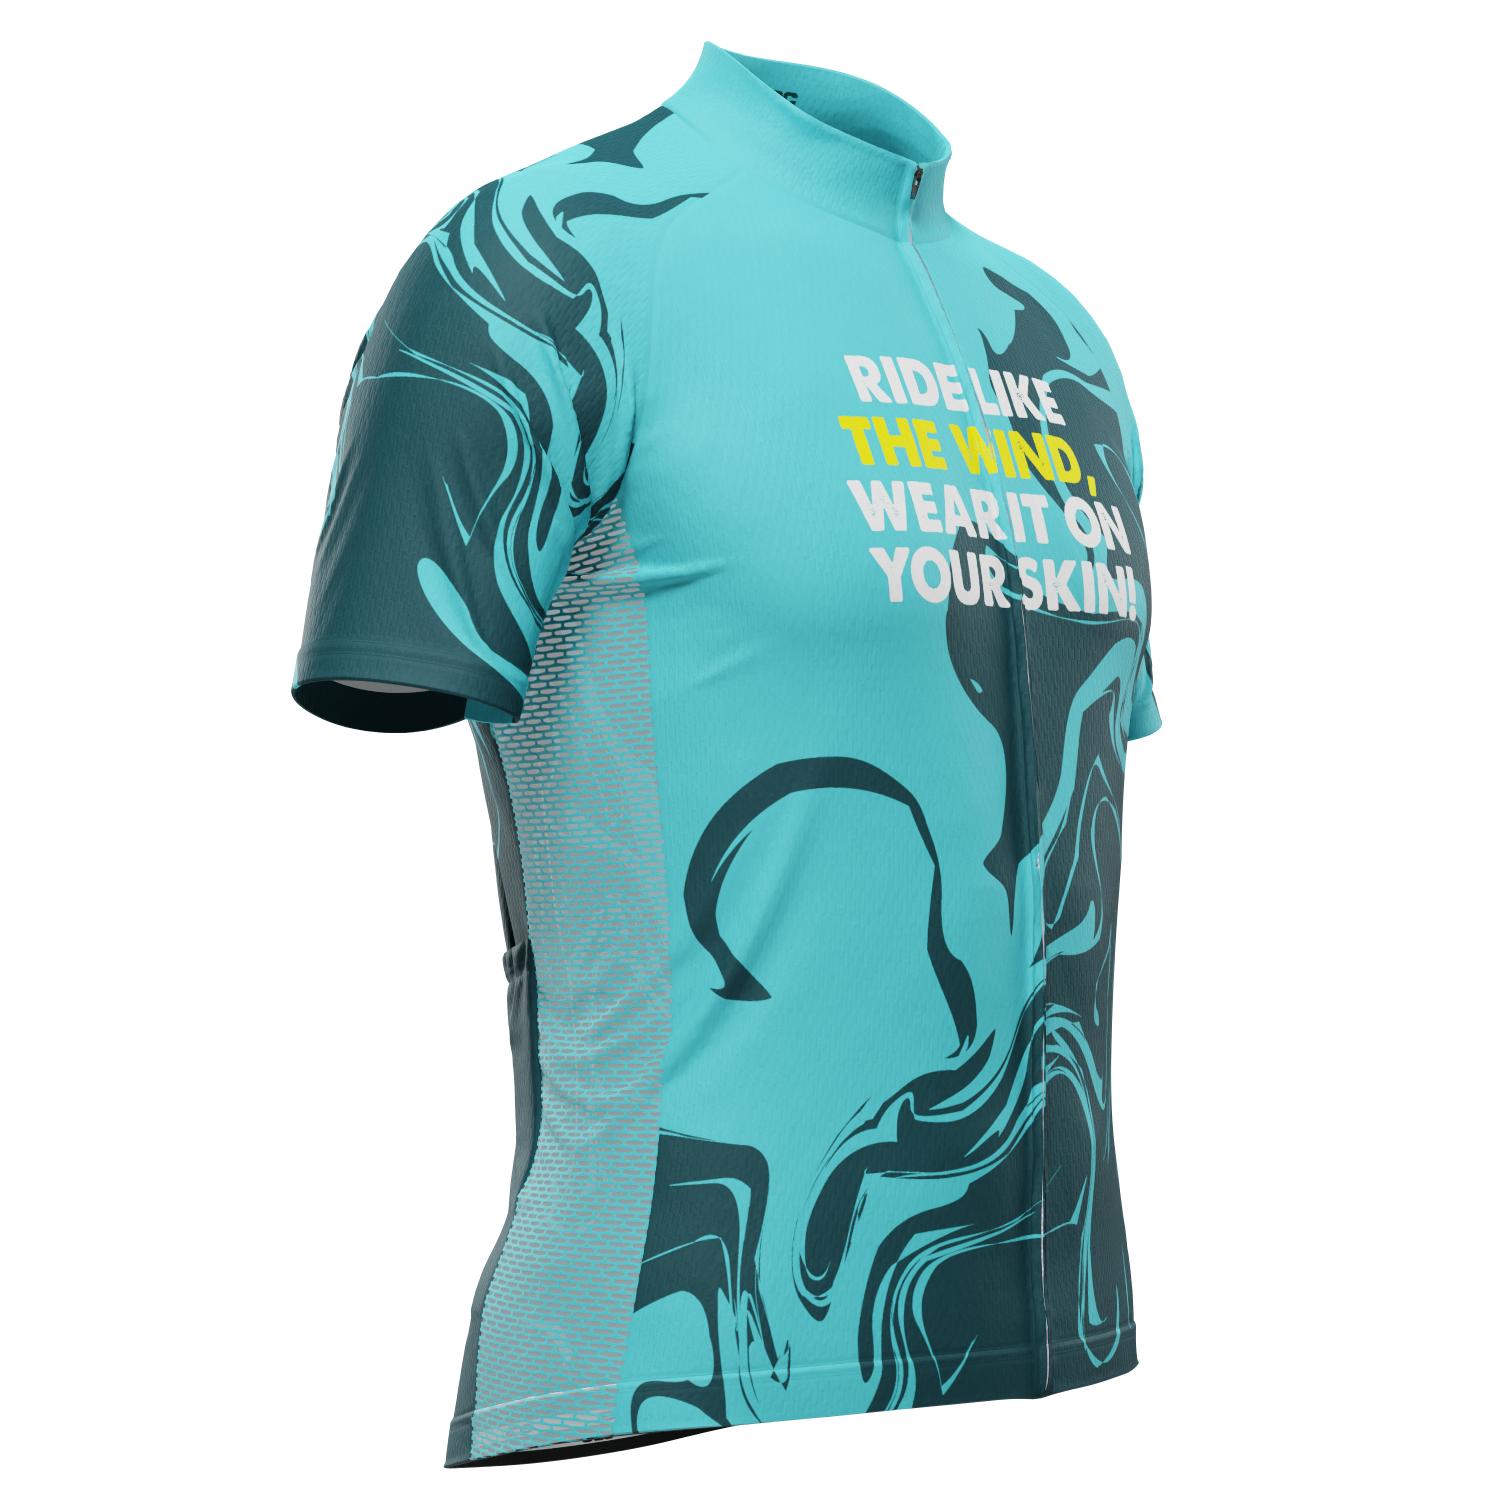 Men's Ride Like The Wind, Wear It On Your Skin! Short Sleeve Cycling Jersey